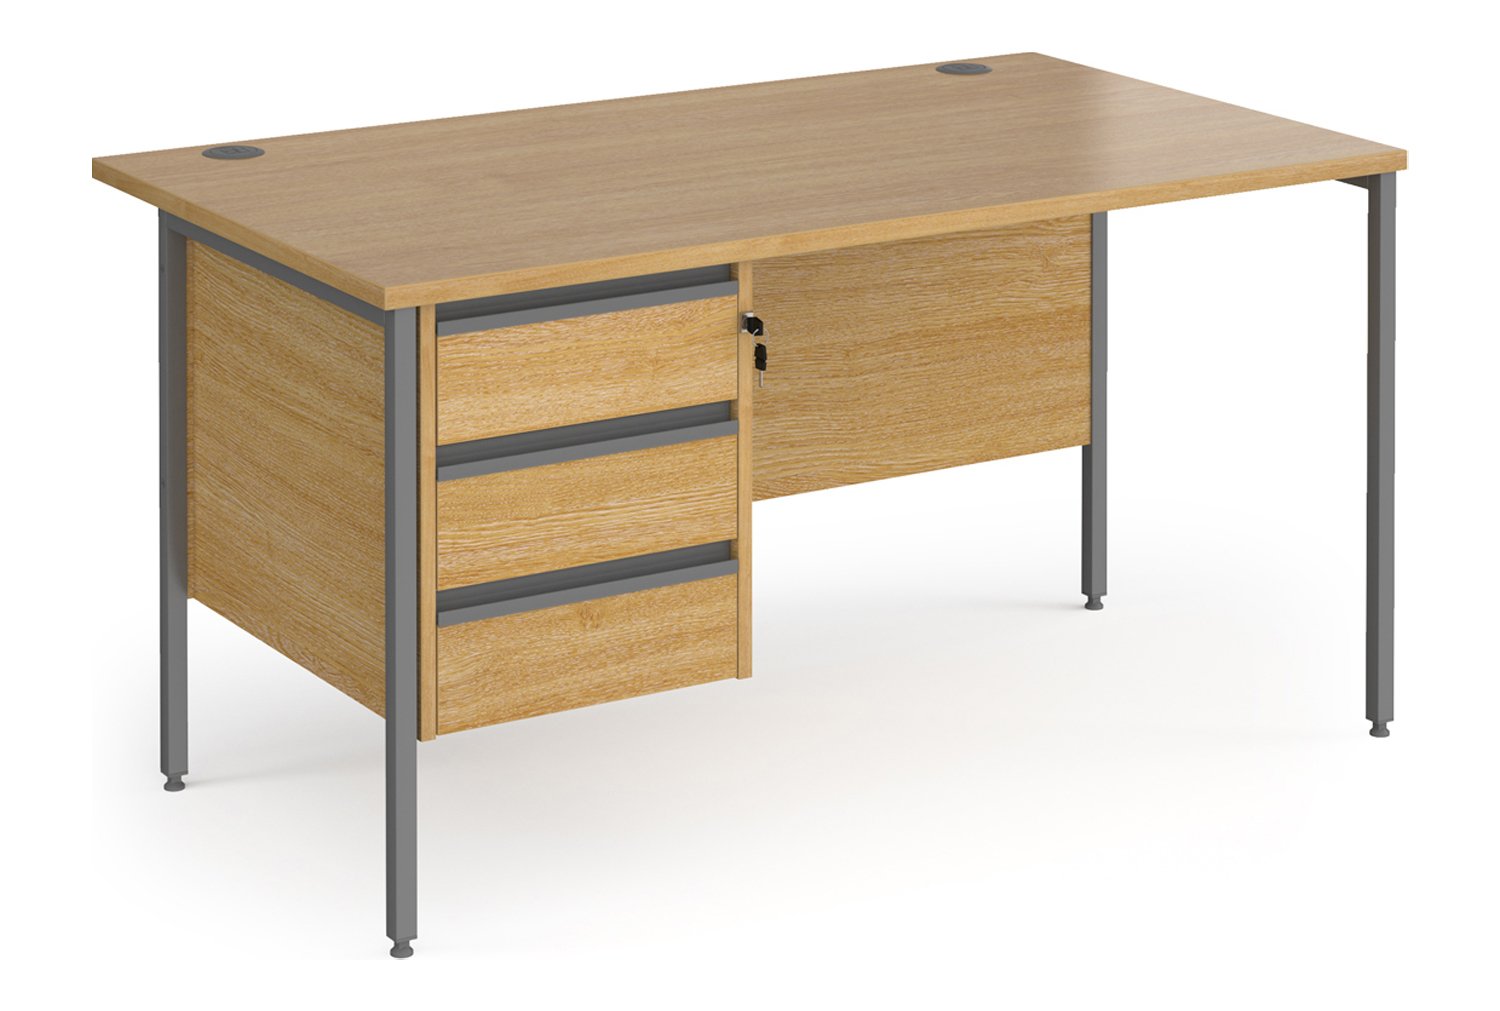 Value Line Classic+ Rectangular H-Leg Office Desk 3 Drawers (Graphite Leg), 140wx80dx73h (cm), Oak, Fully Installed